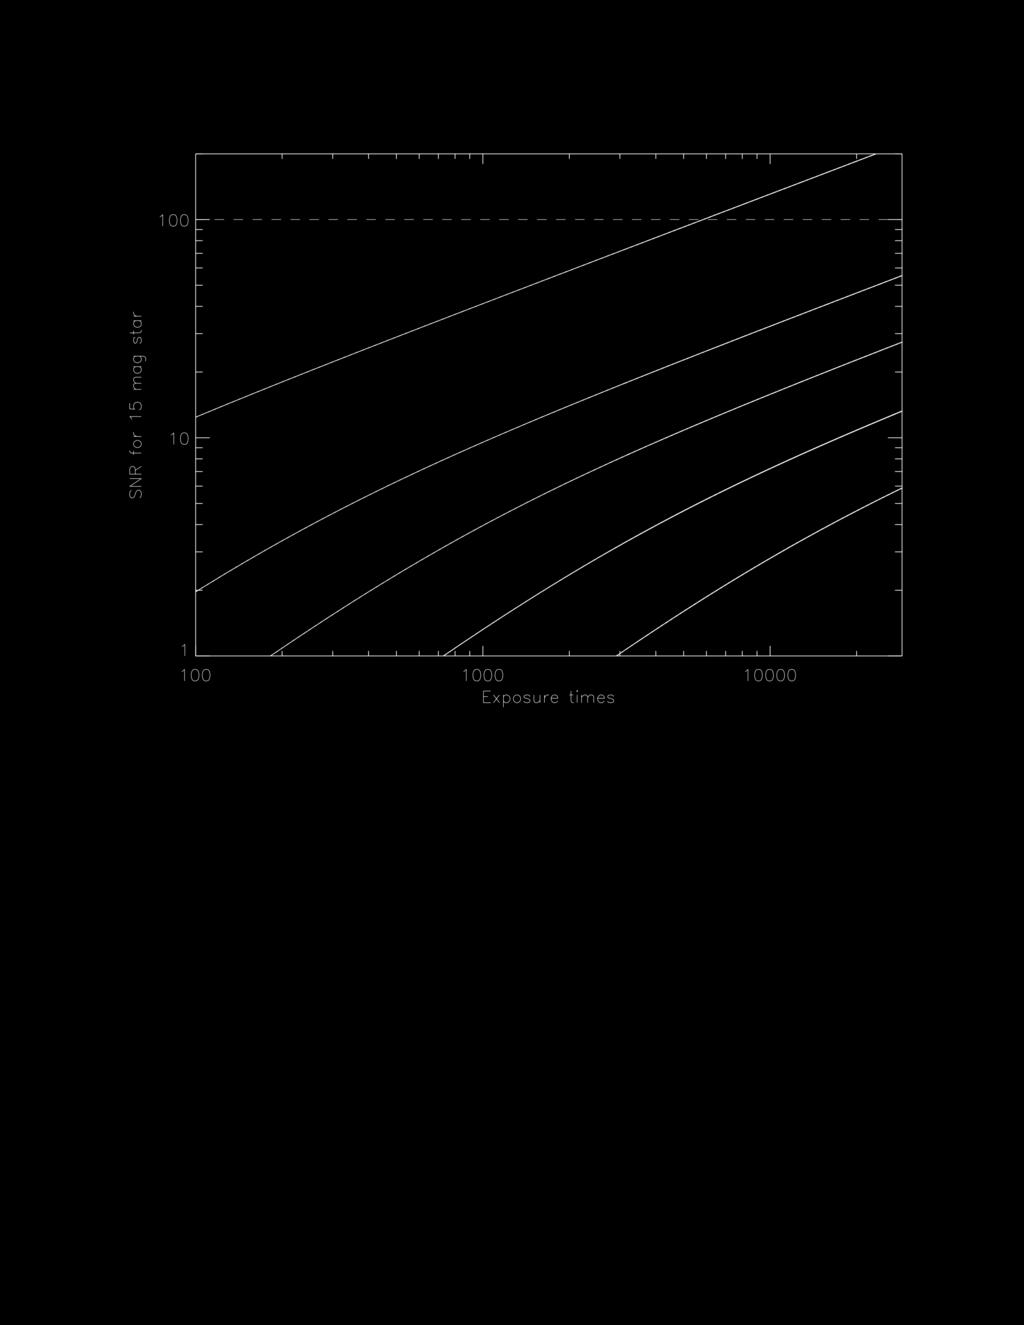 Spectrometer S/N Fiducial based on HARPS data Reff=0.